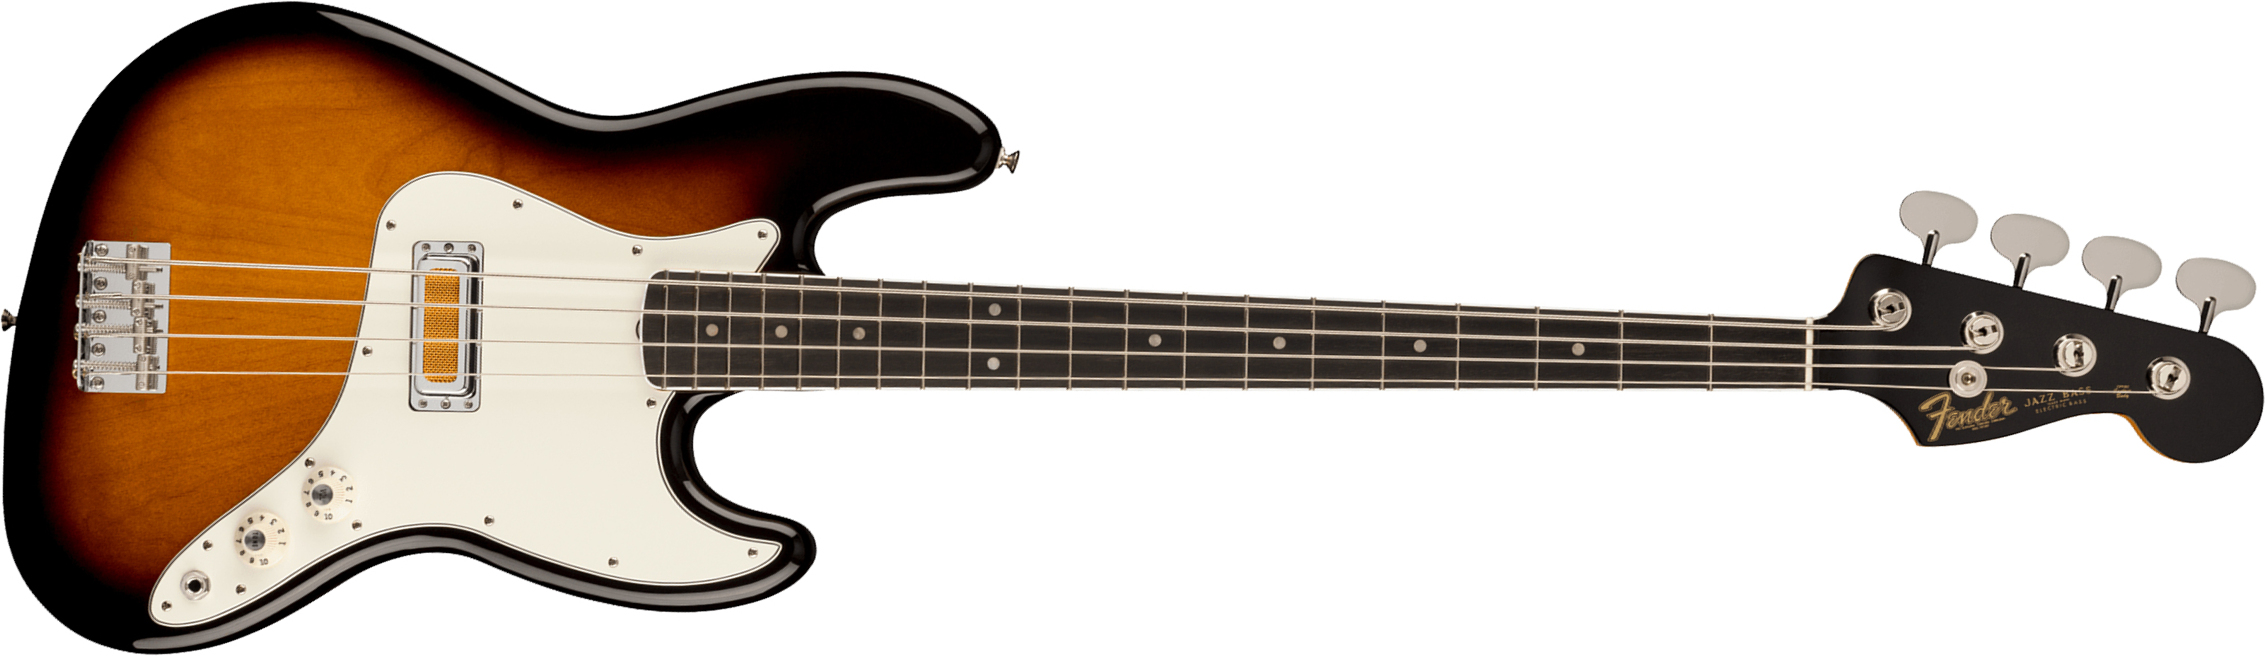 Fender Jazz Bass Gold Foil Ltd Mex Eb - 2-color Sunburst - Basse Électrique Solid Body - Main picture